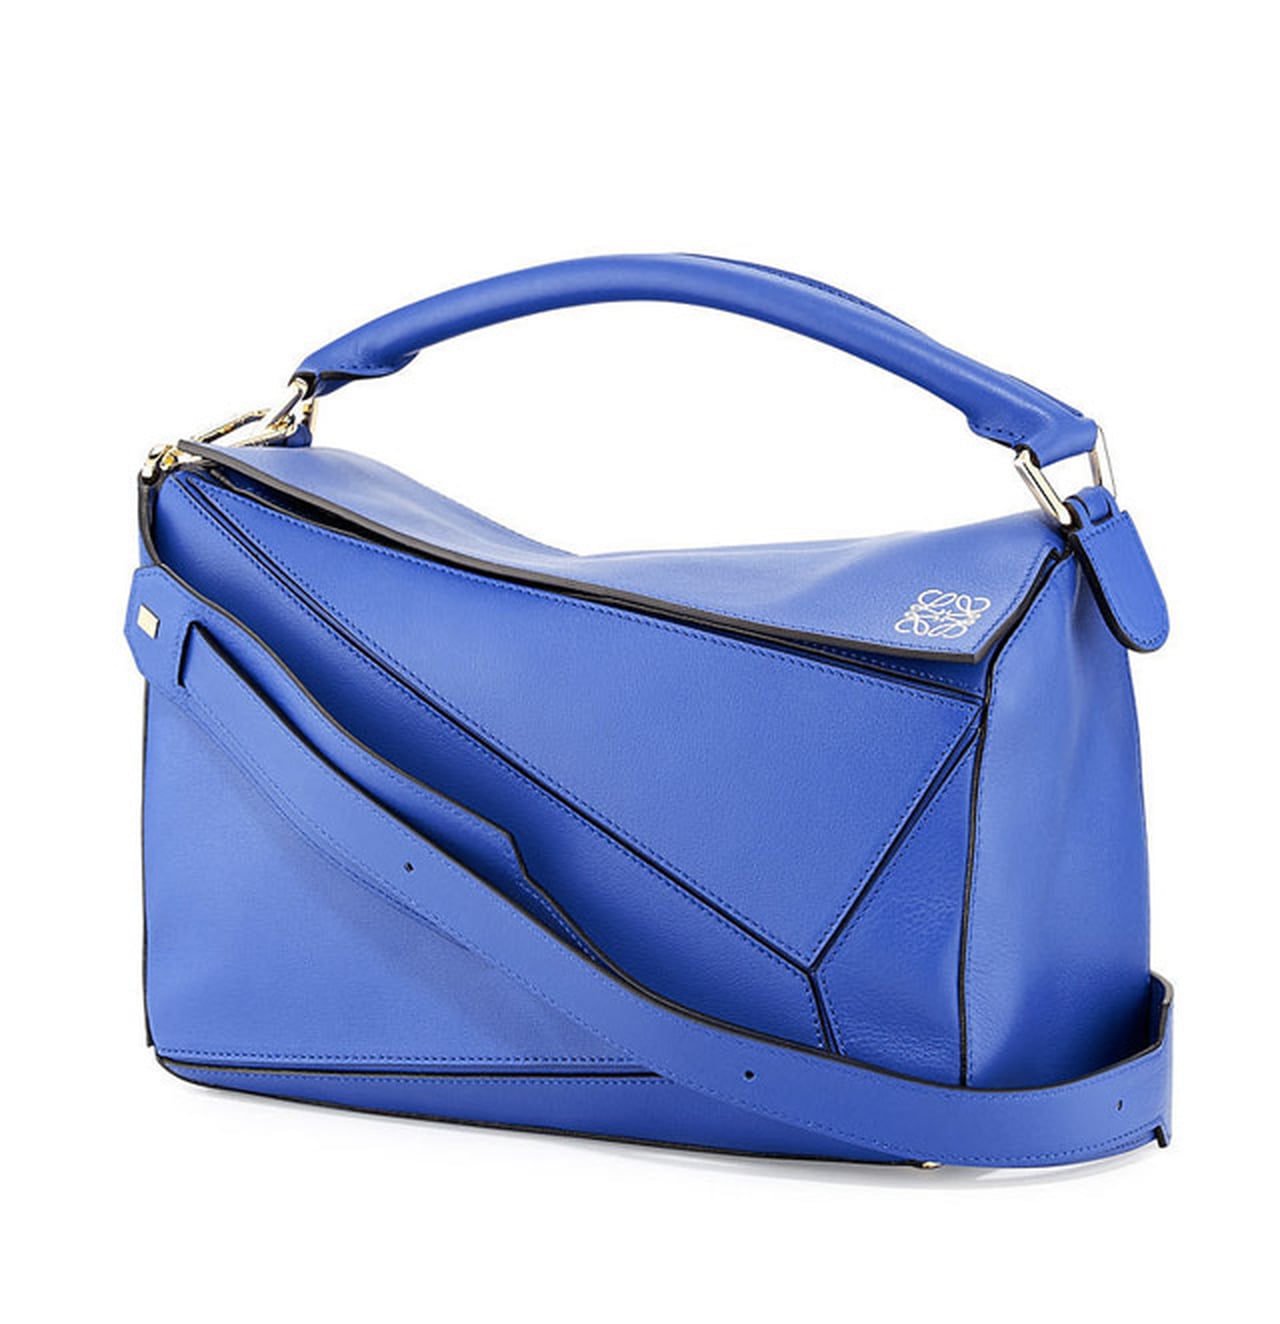 Spring Handbag Trends 2016 | POPSUGAR Fashion